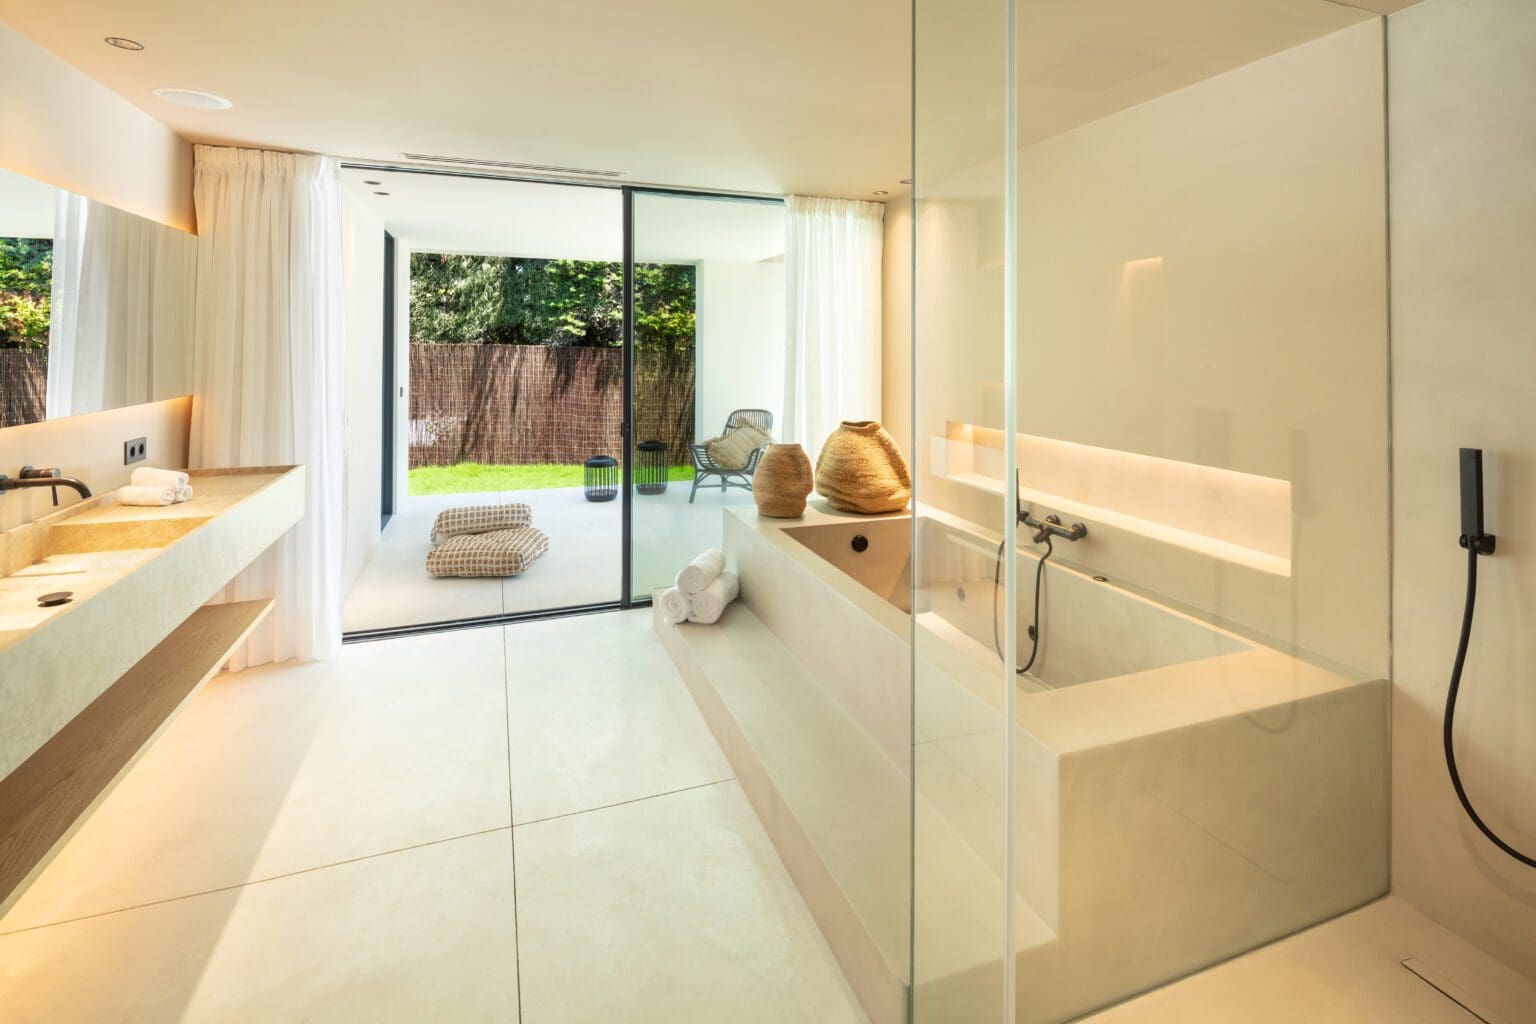 Auriga 1 – Luxury Villa